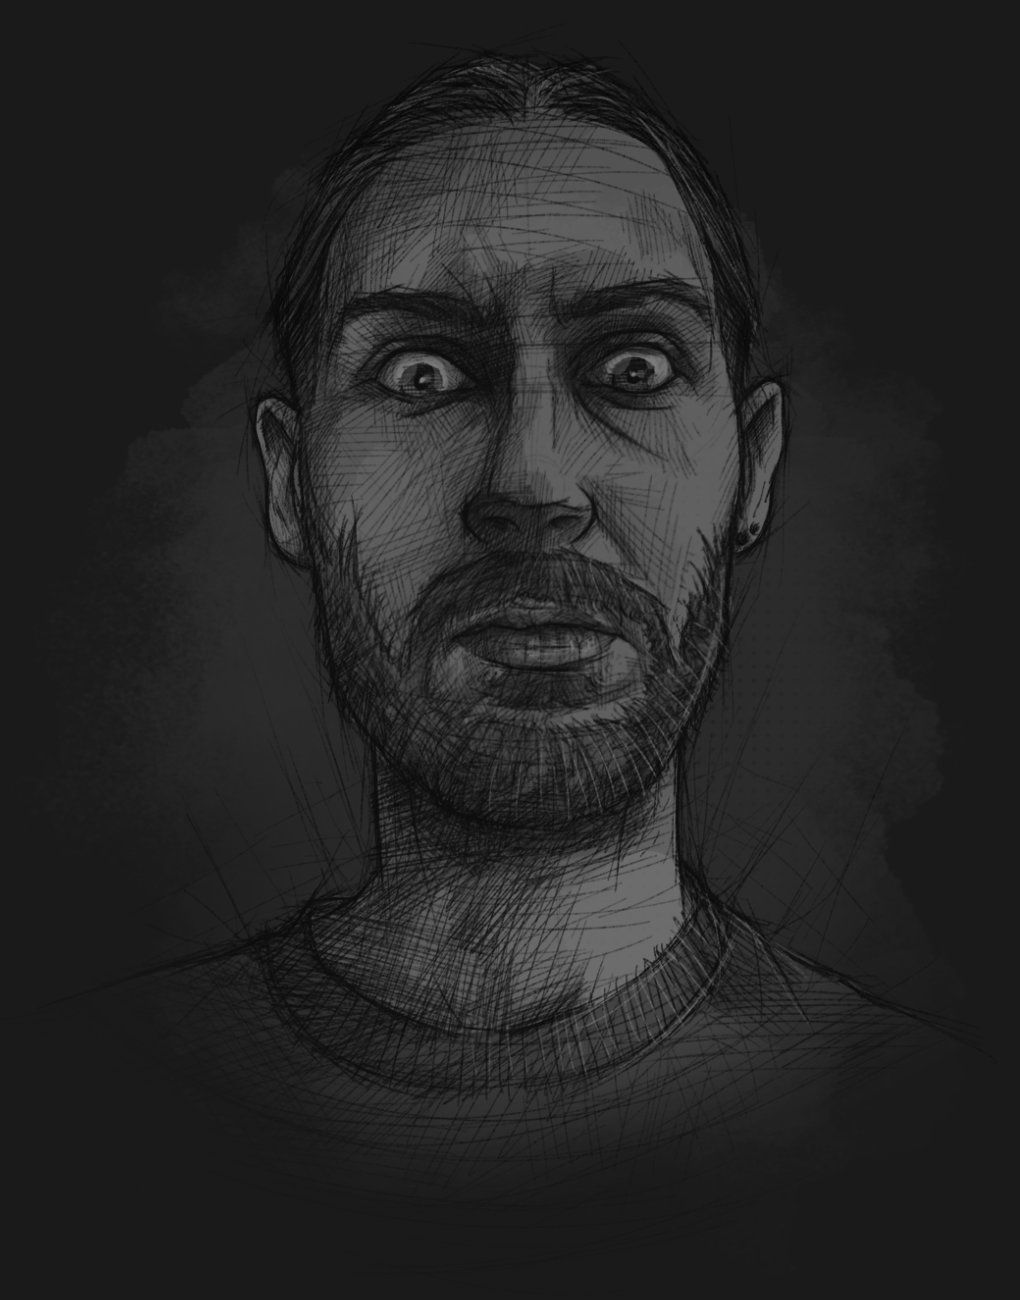 Ein skizzenhaft illustriertes Selbstportrait, das den Illustrator mit Grimasse mit aufgerissenen Augen zeigt